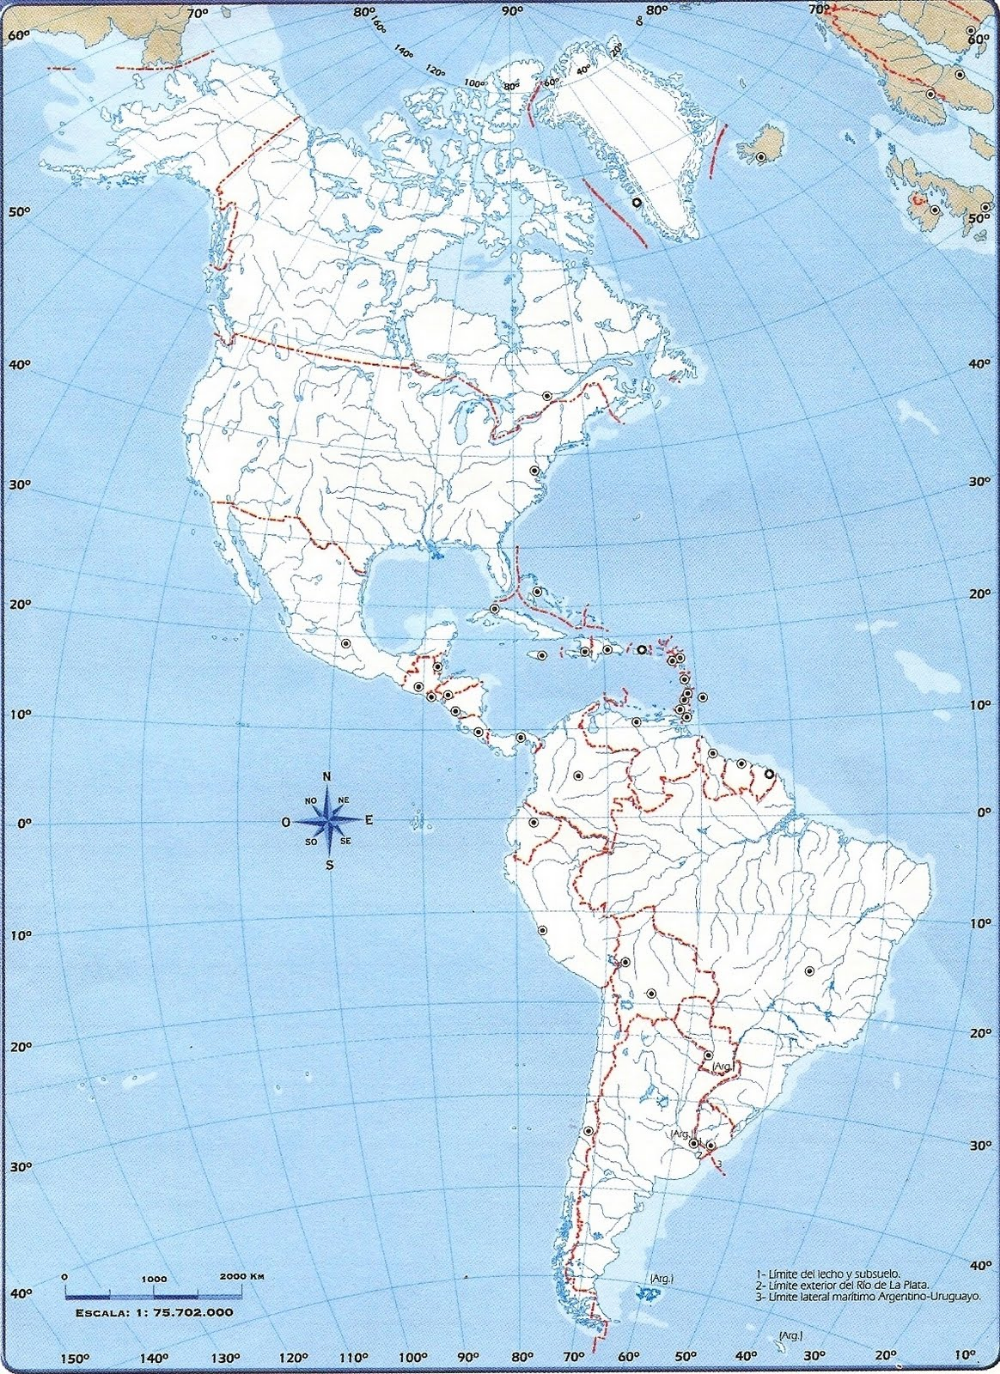 Mapa nro 3 continente americano politico